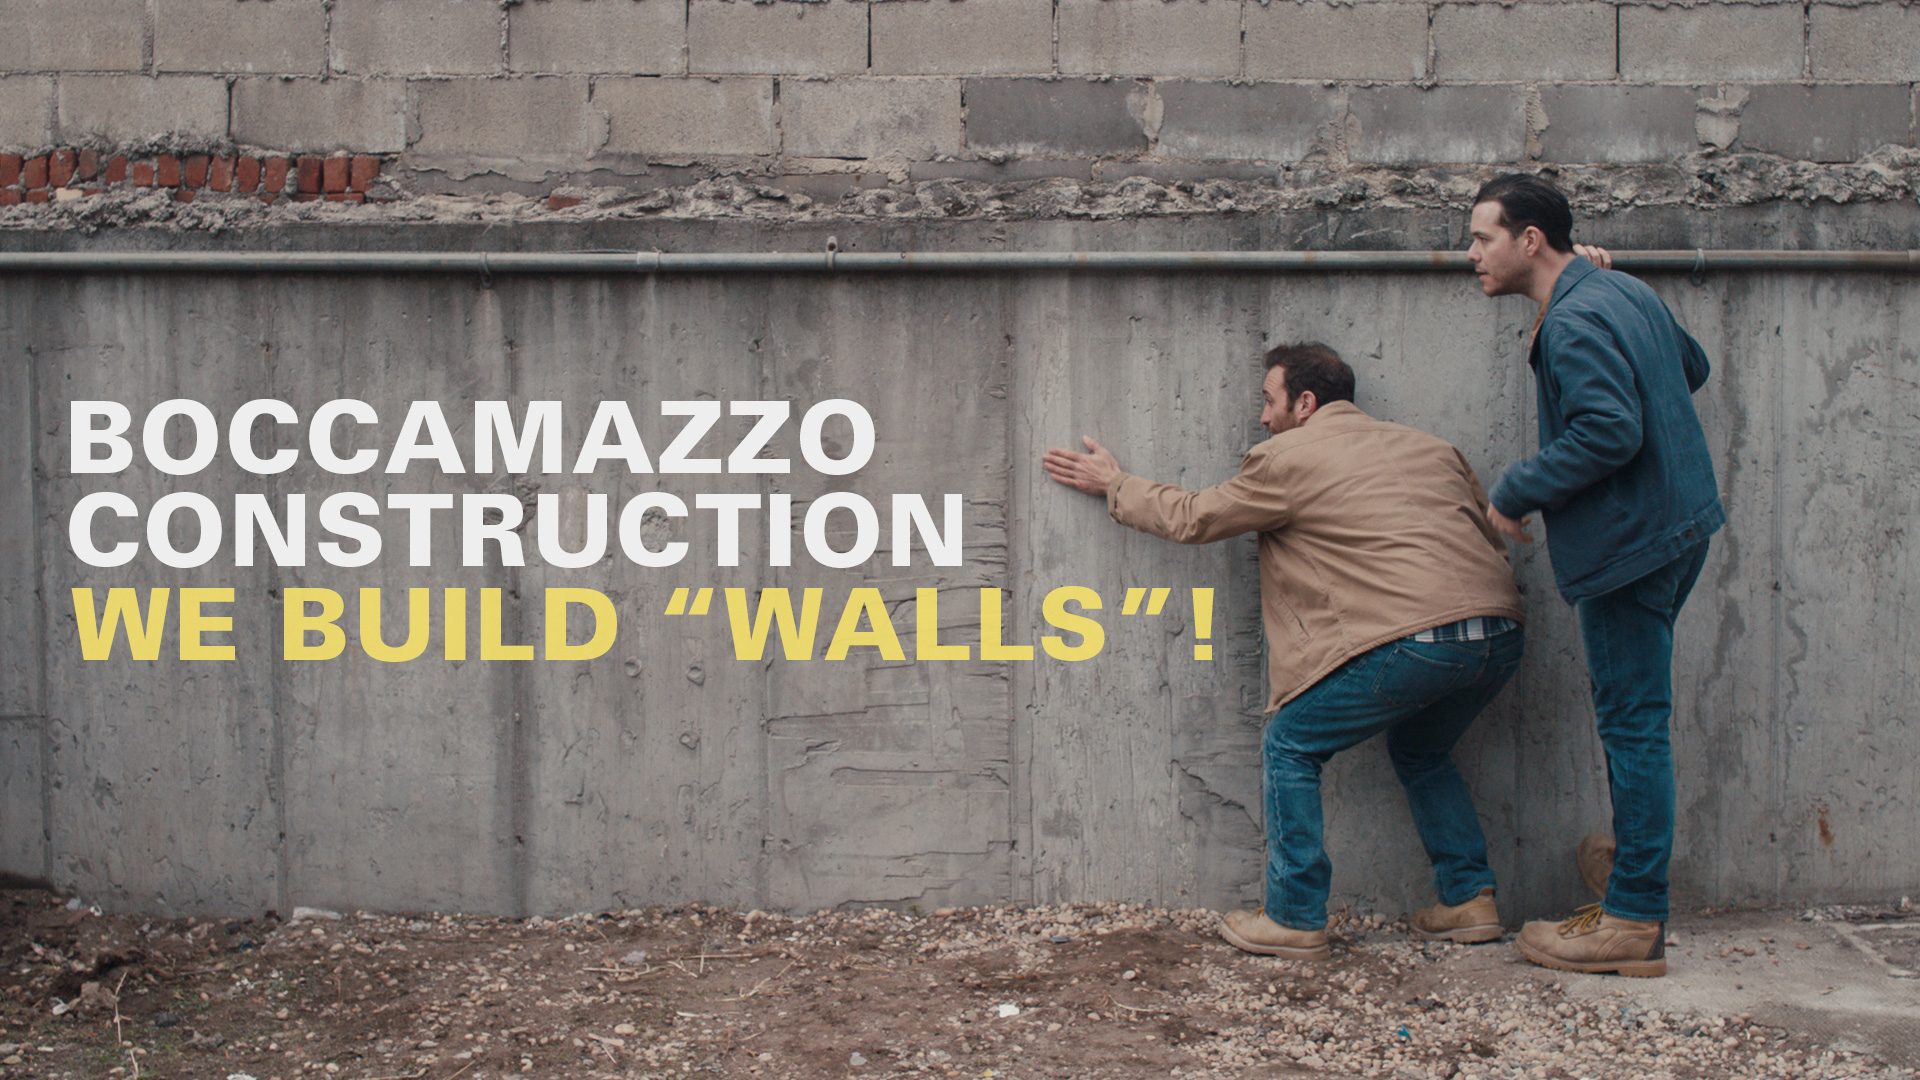 We Build Walls!